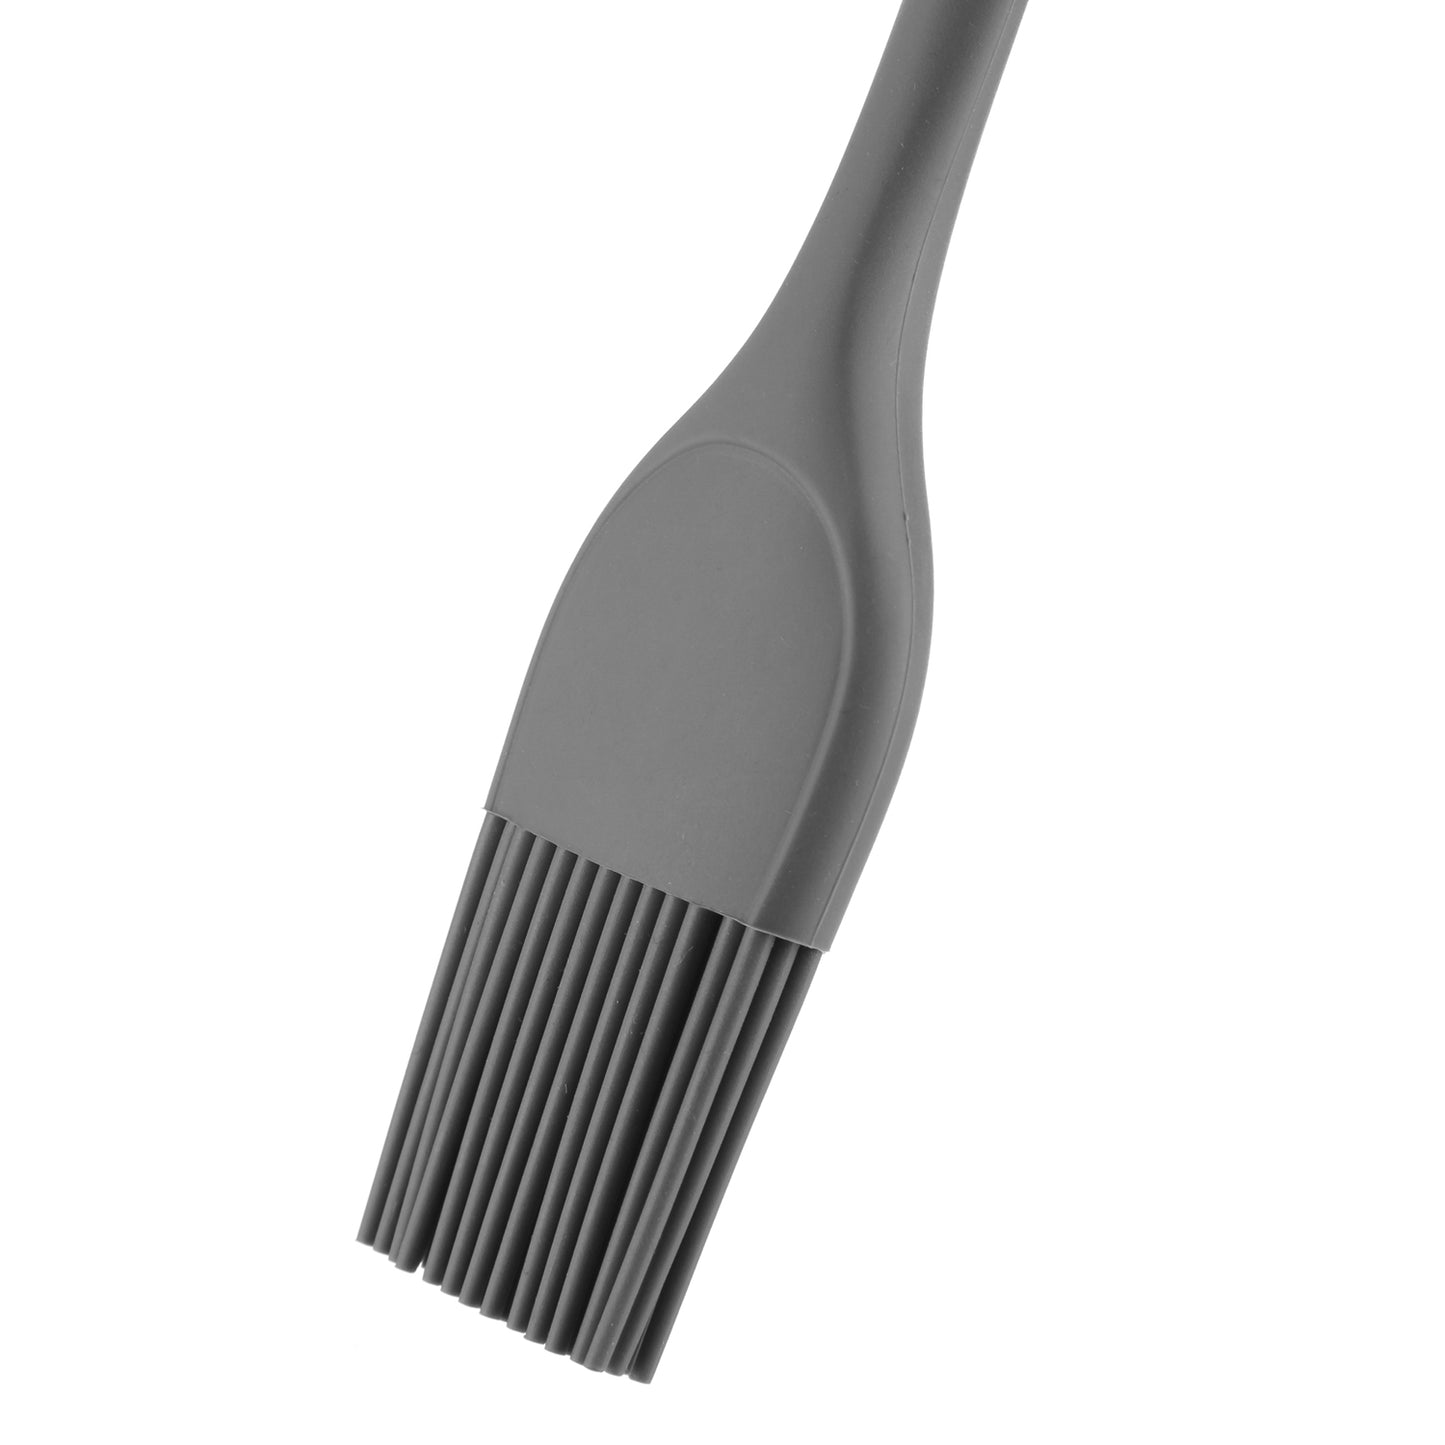 Pennello in silicone grigio scuro 26 cm